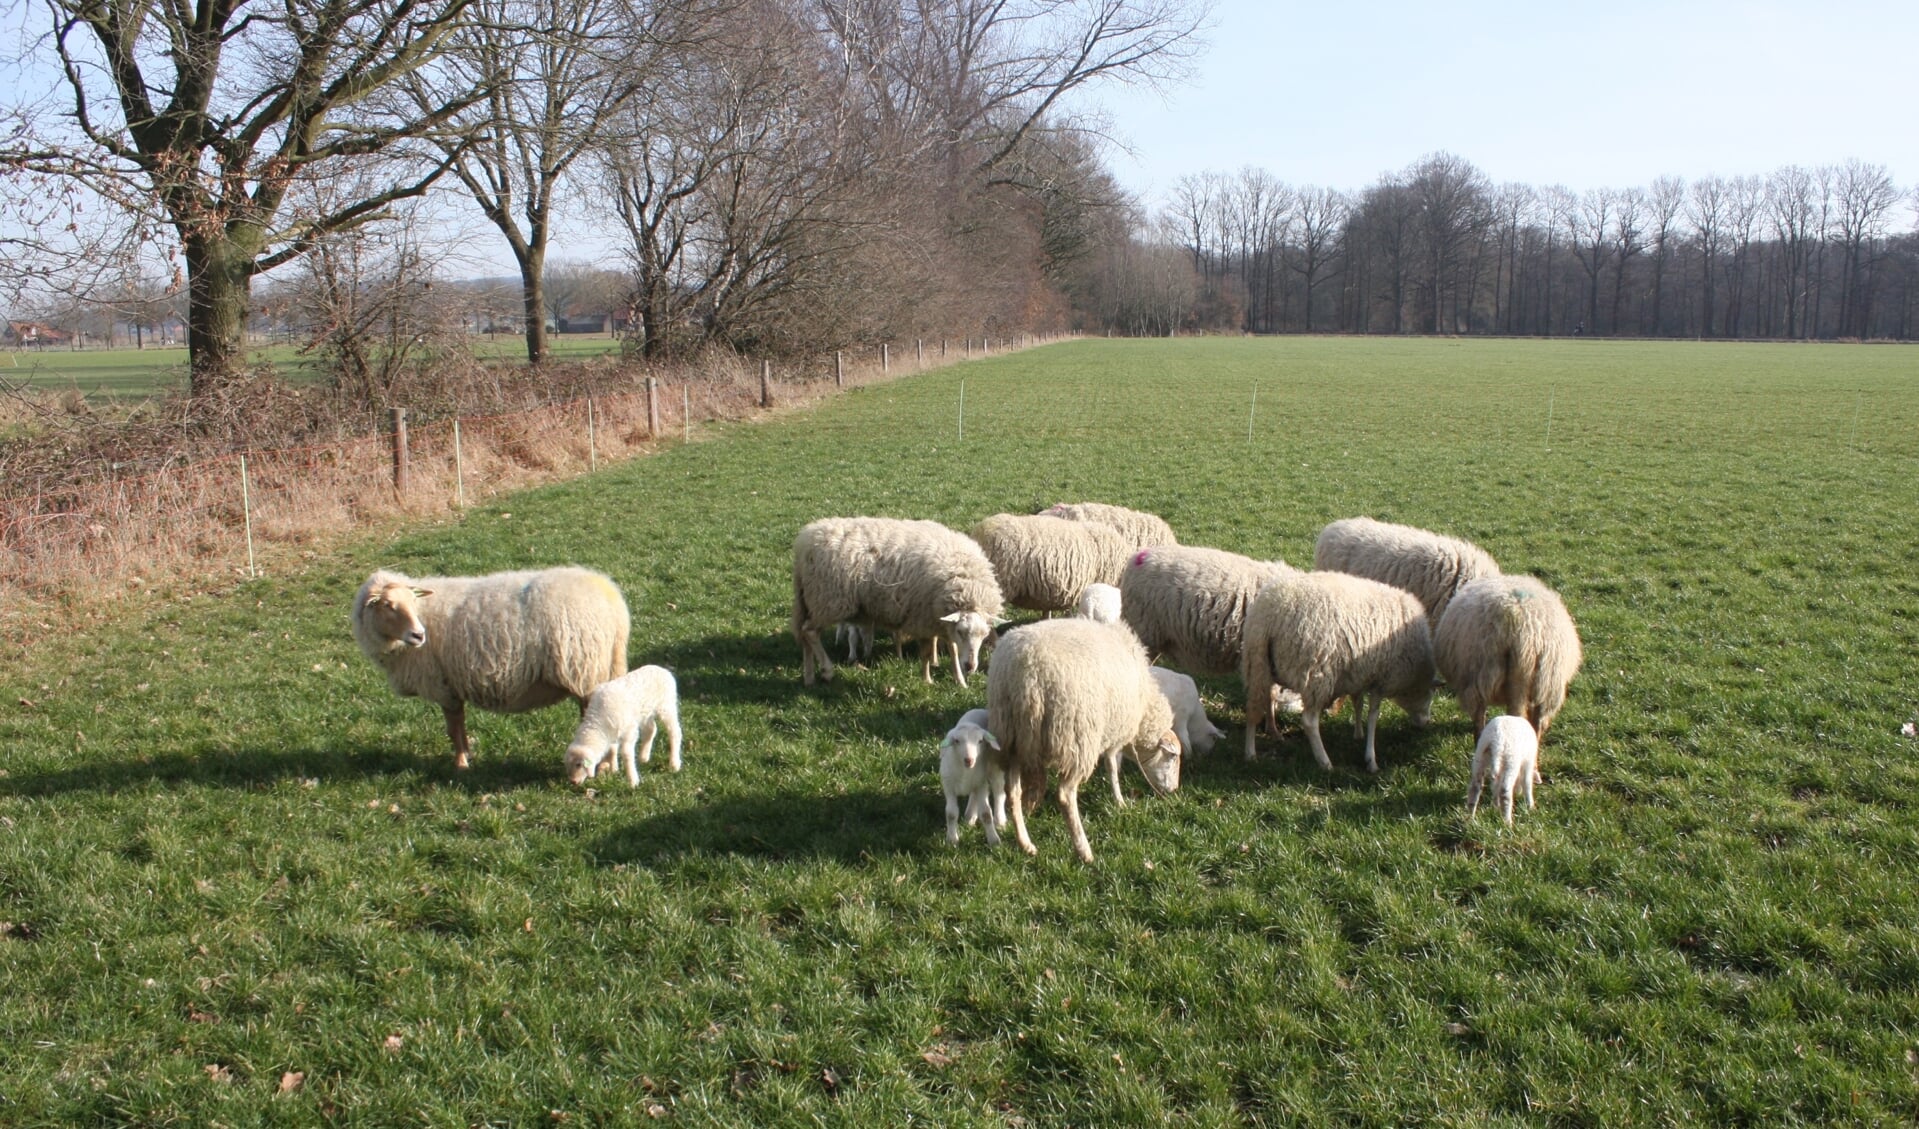 Lammetjes en ooien van het ras Kempische heideschaap op de wei. (foto: Bart Willers)